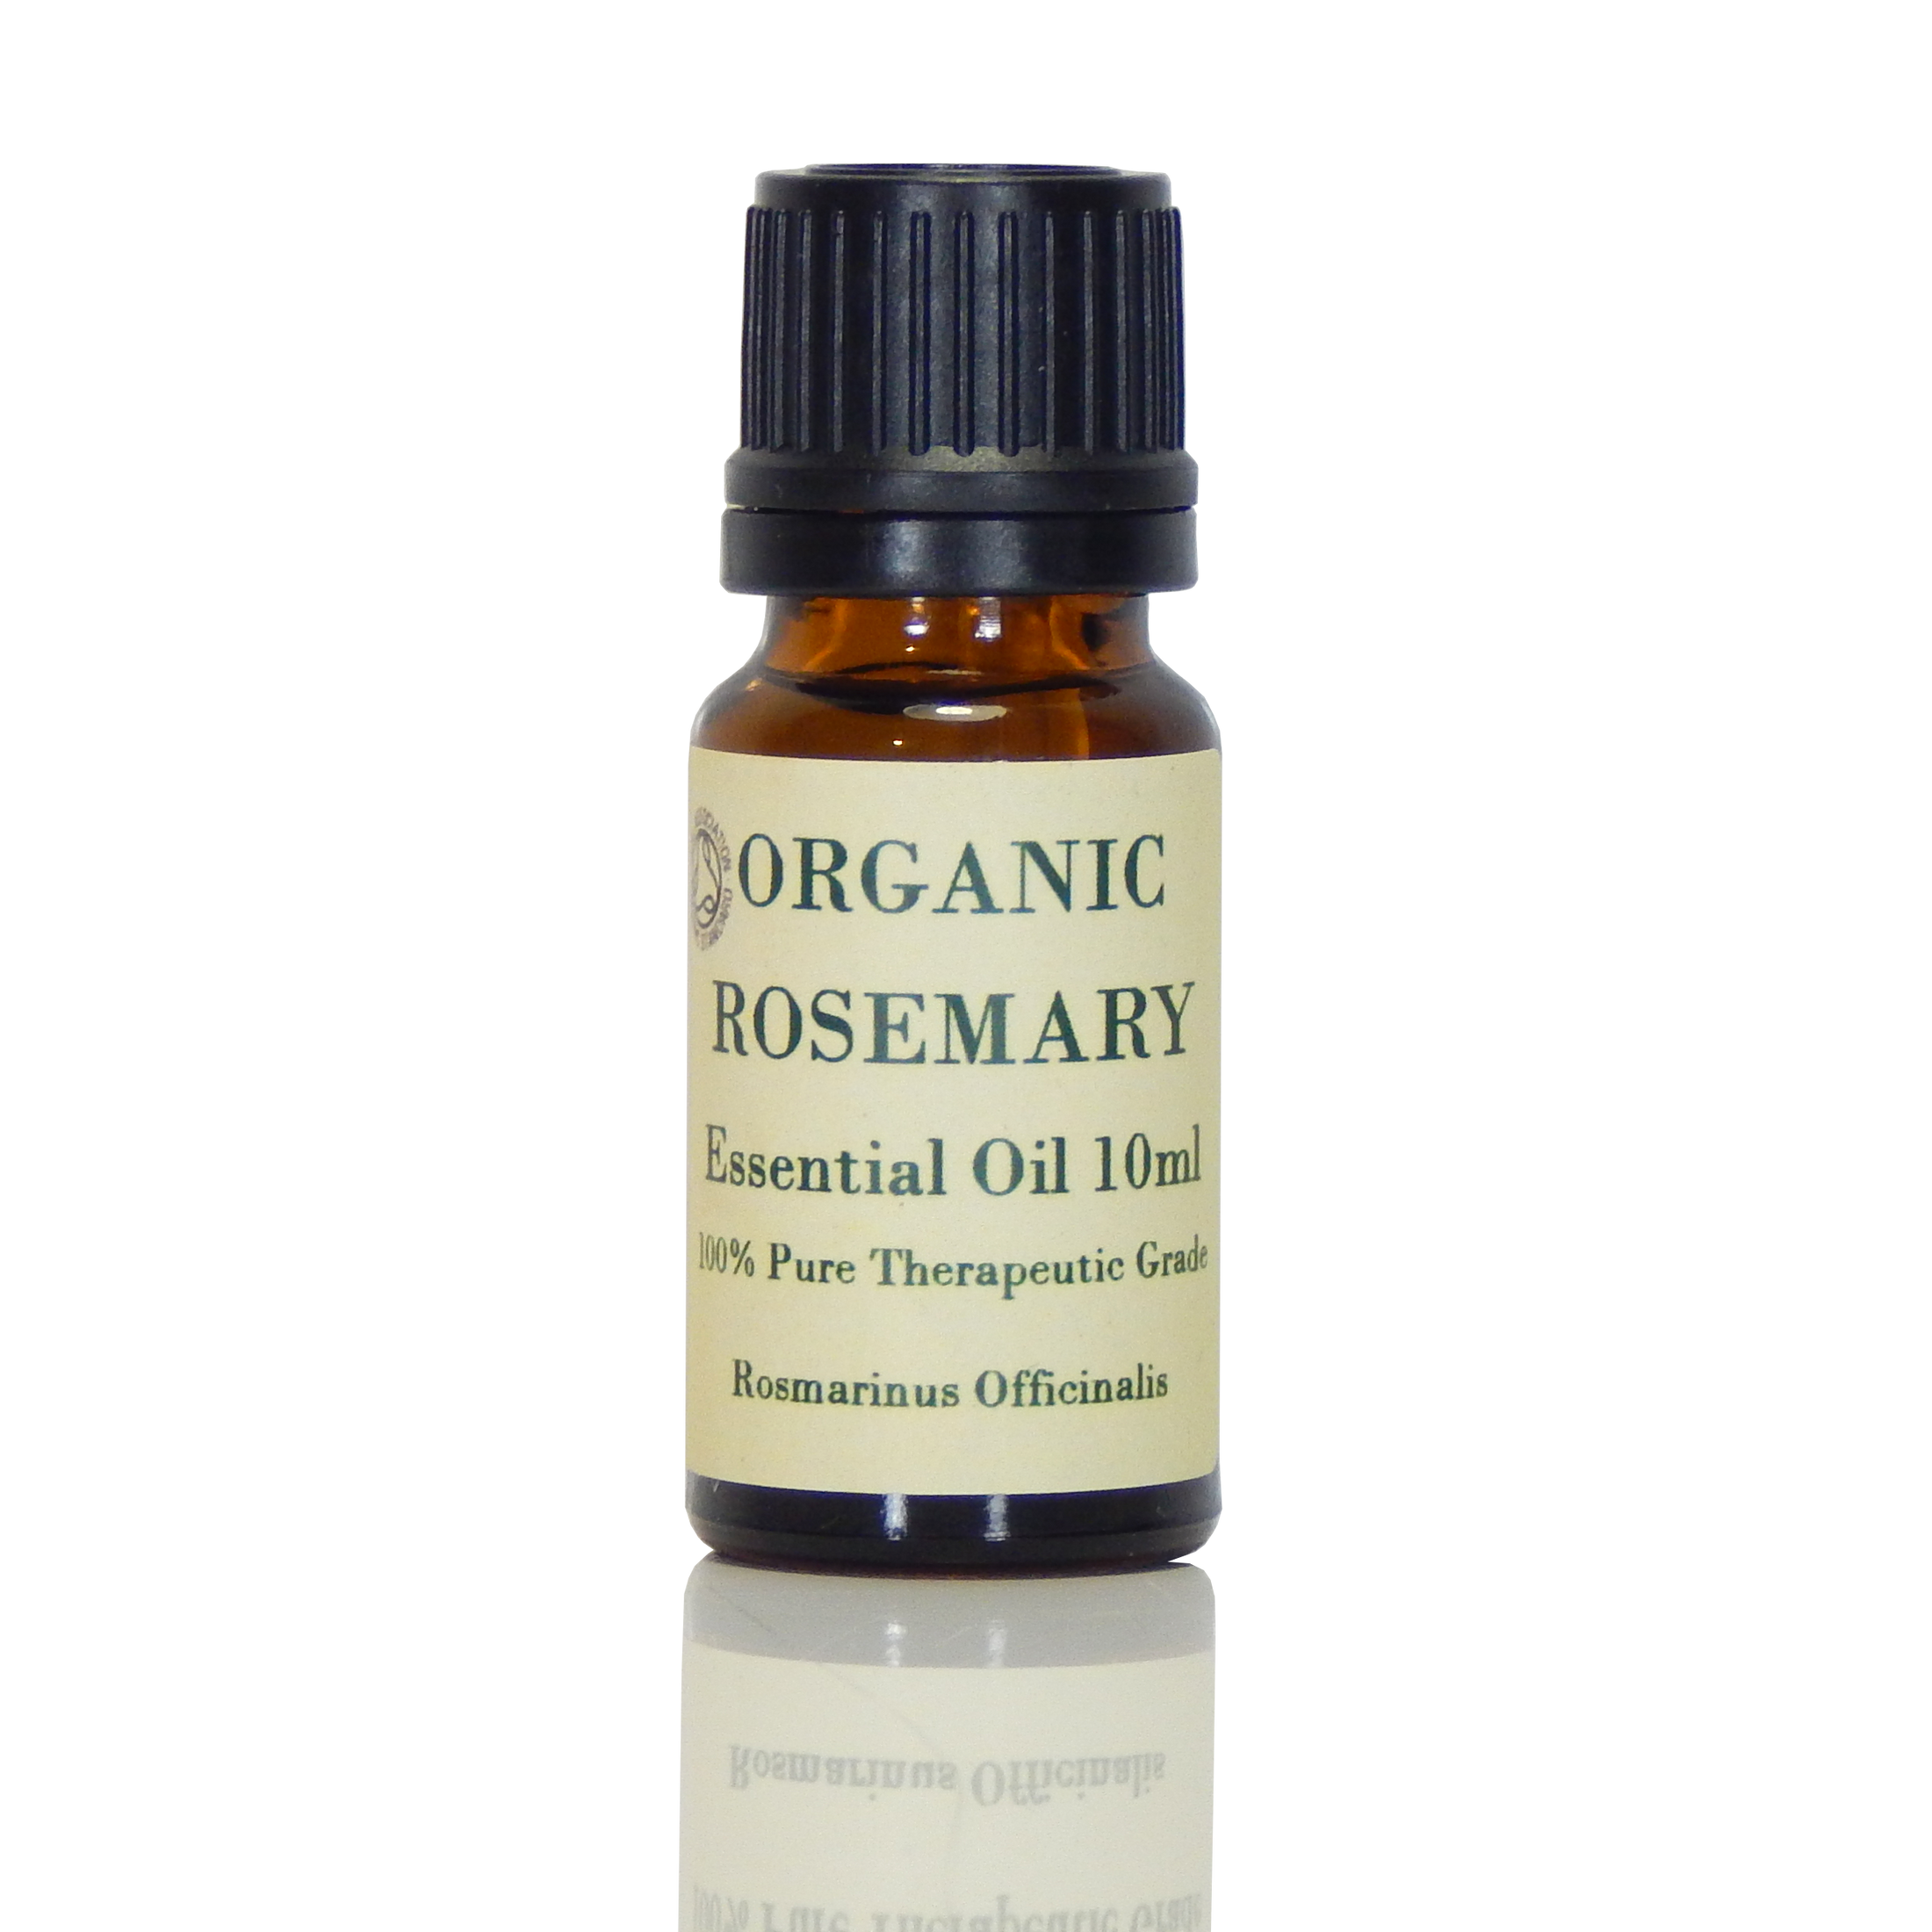 Rosemary (Organic) Essential Oil - Rosmarinus Officinalis